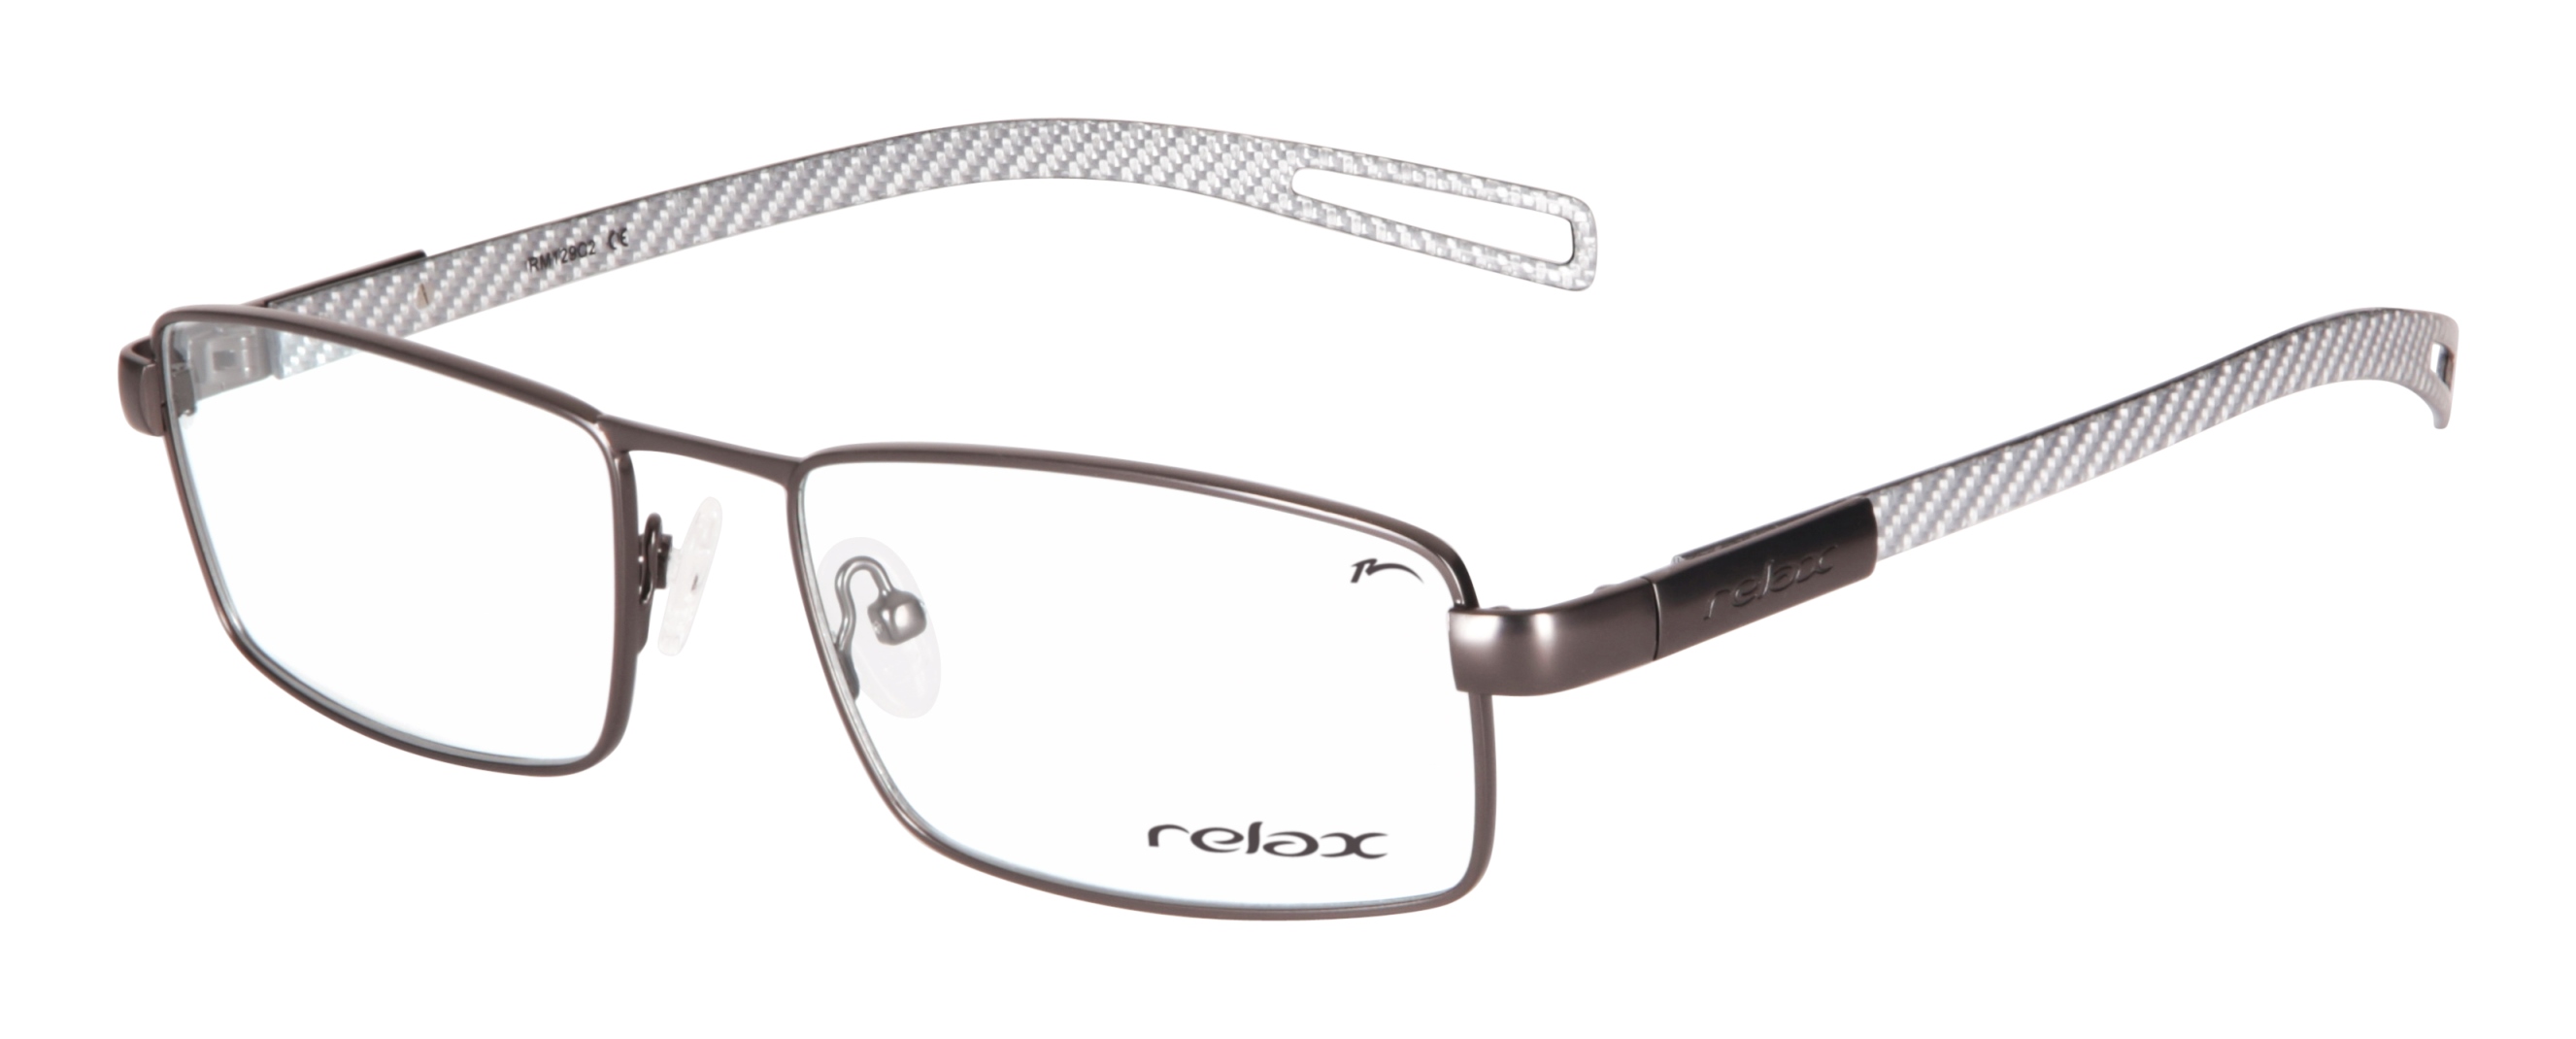 Dioptrické brýle Relax Dust RM129C2 -